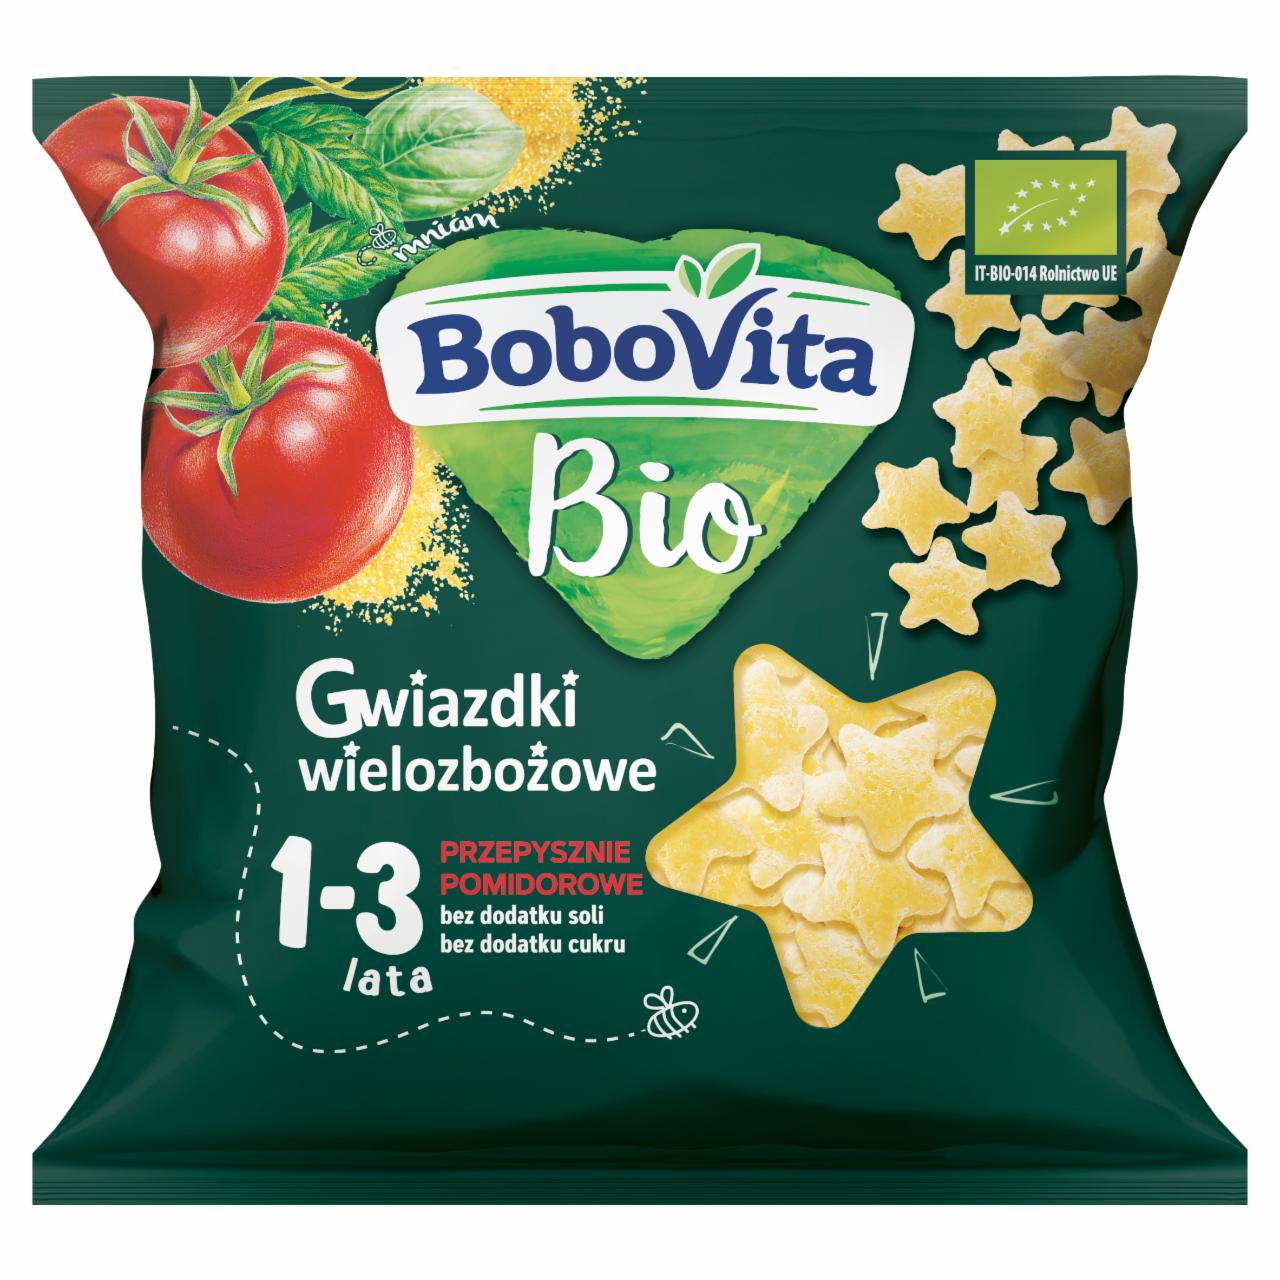 Zdjęcia - BoboVita Bio Gwiazdki wielozbożowe przepysznie pomidorowe 1-3 lata 20 g